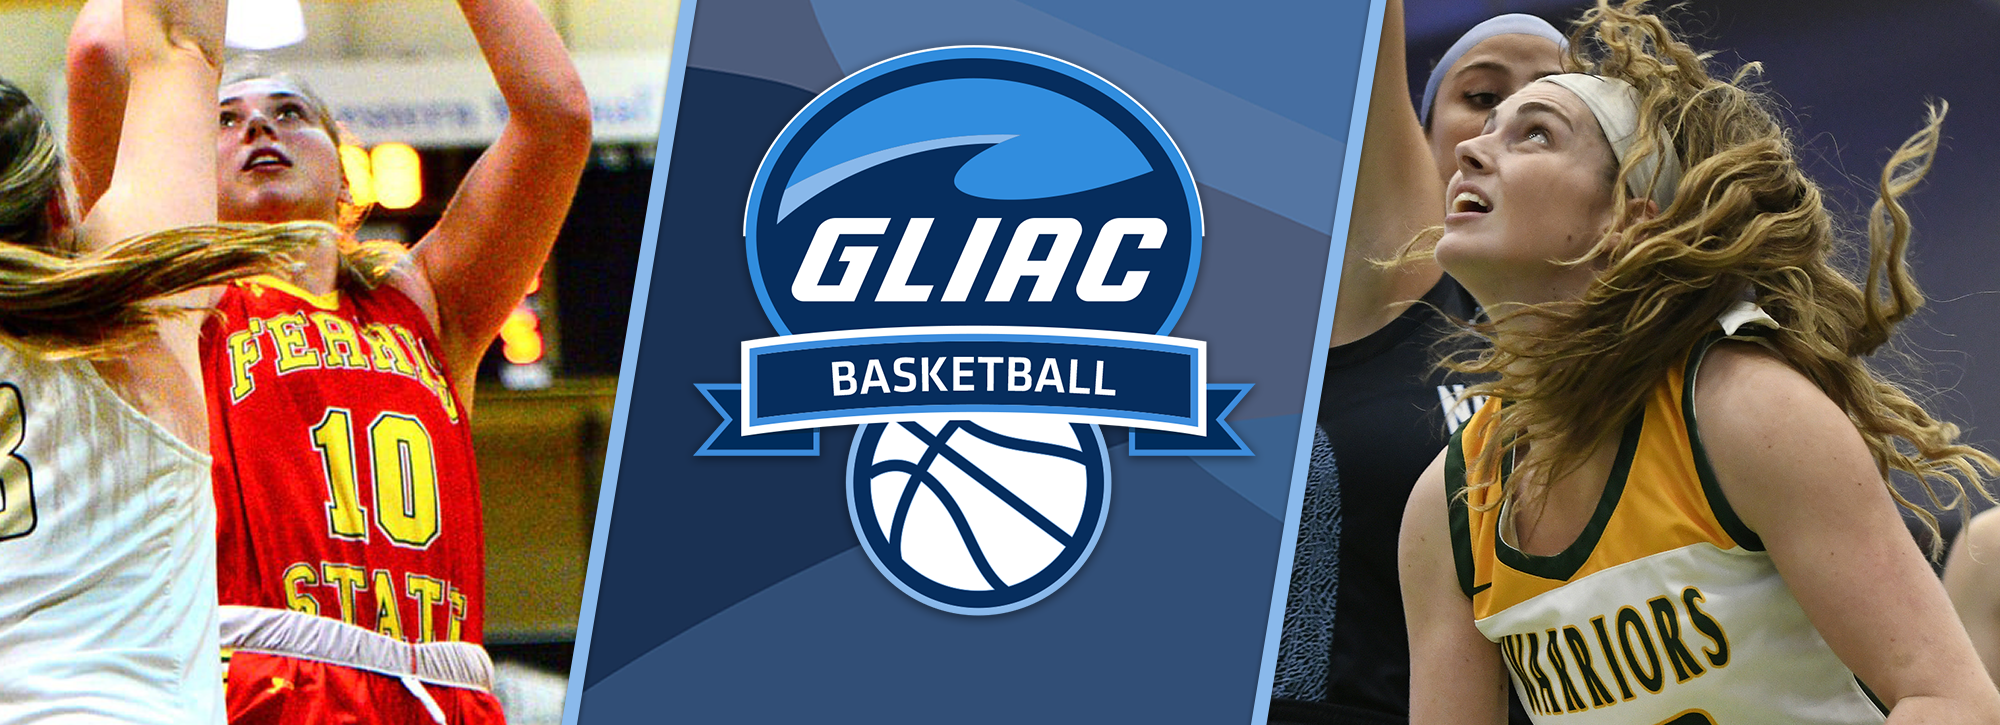 FSU's Idoni and WSU's George honored as GLIAC Women's Basketball Players of the Week